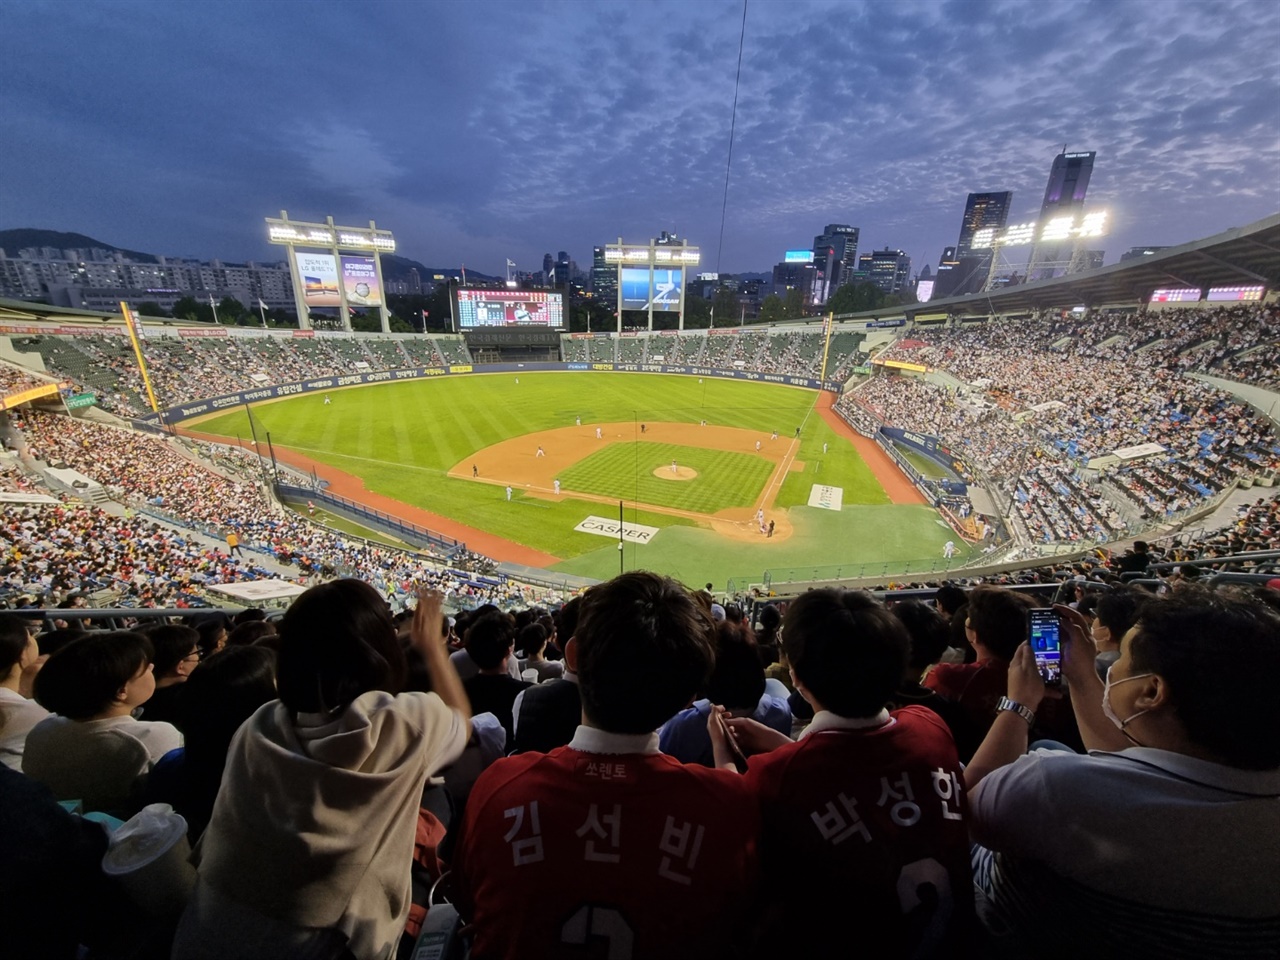  여전히 많은 국민이 사랑하는 한국 야구가 하나의 '문화'로서 한 단계 발전하길 바란다는 게 타케후미 씨의 생각이었다.